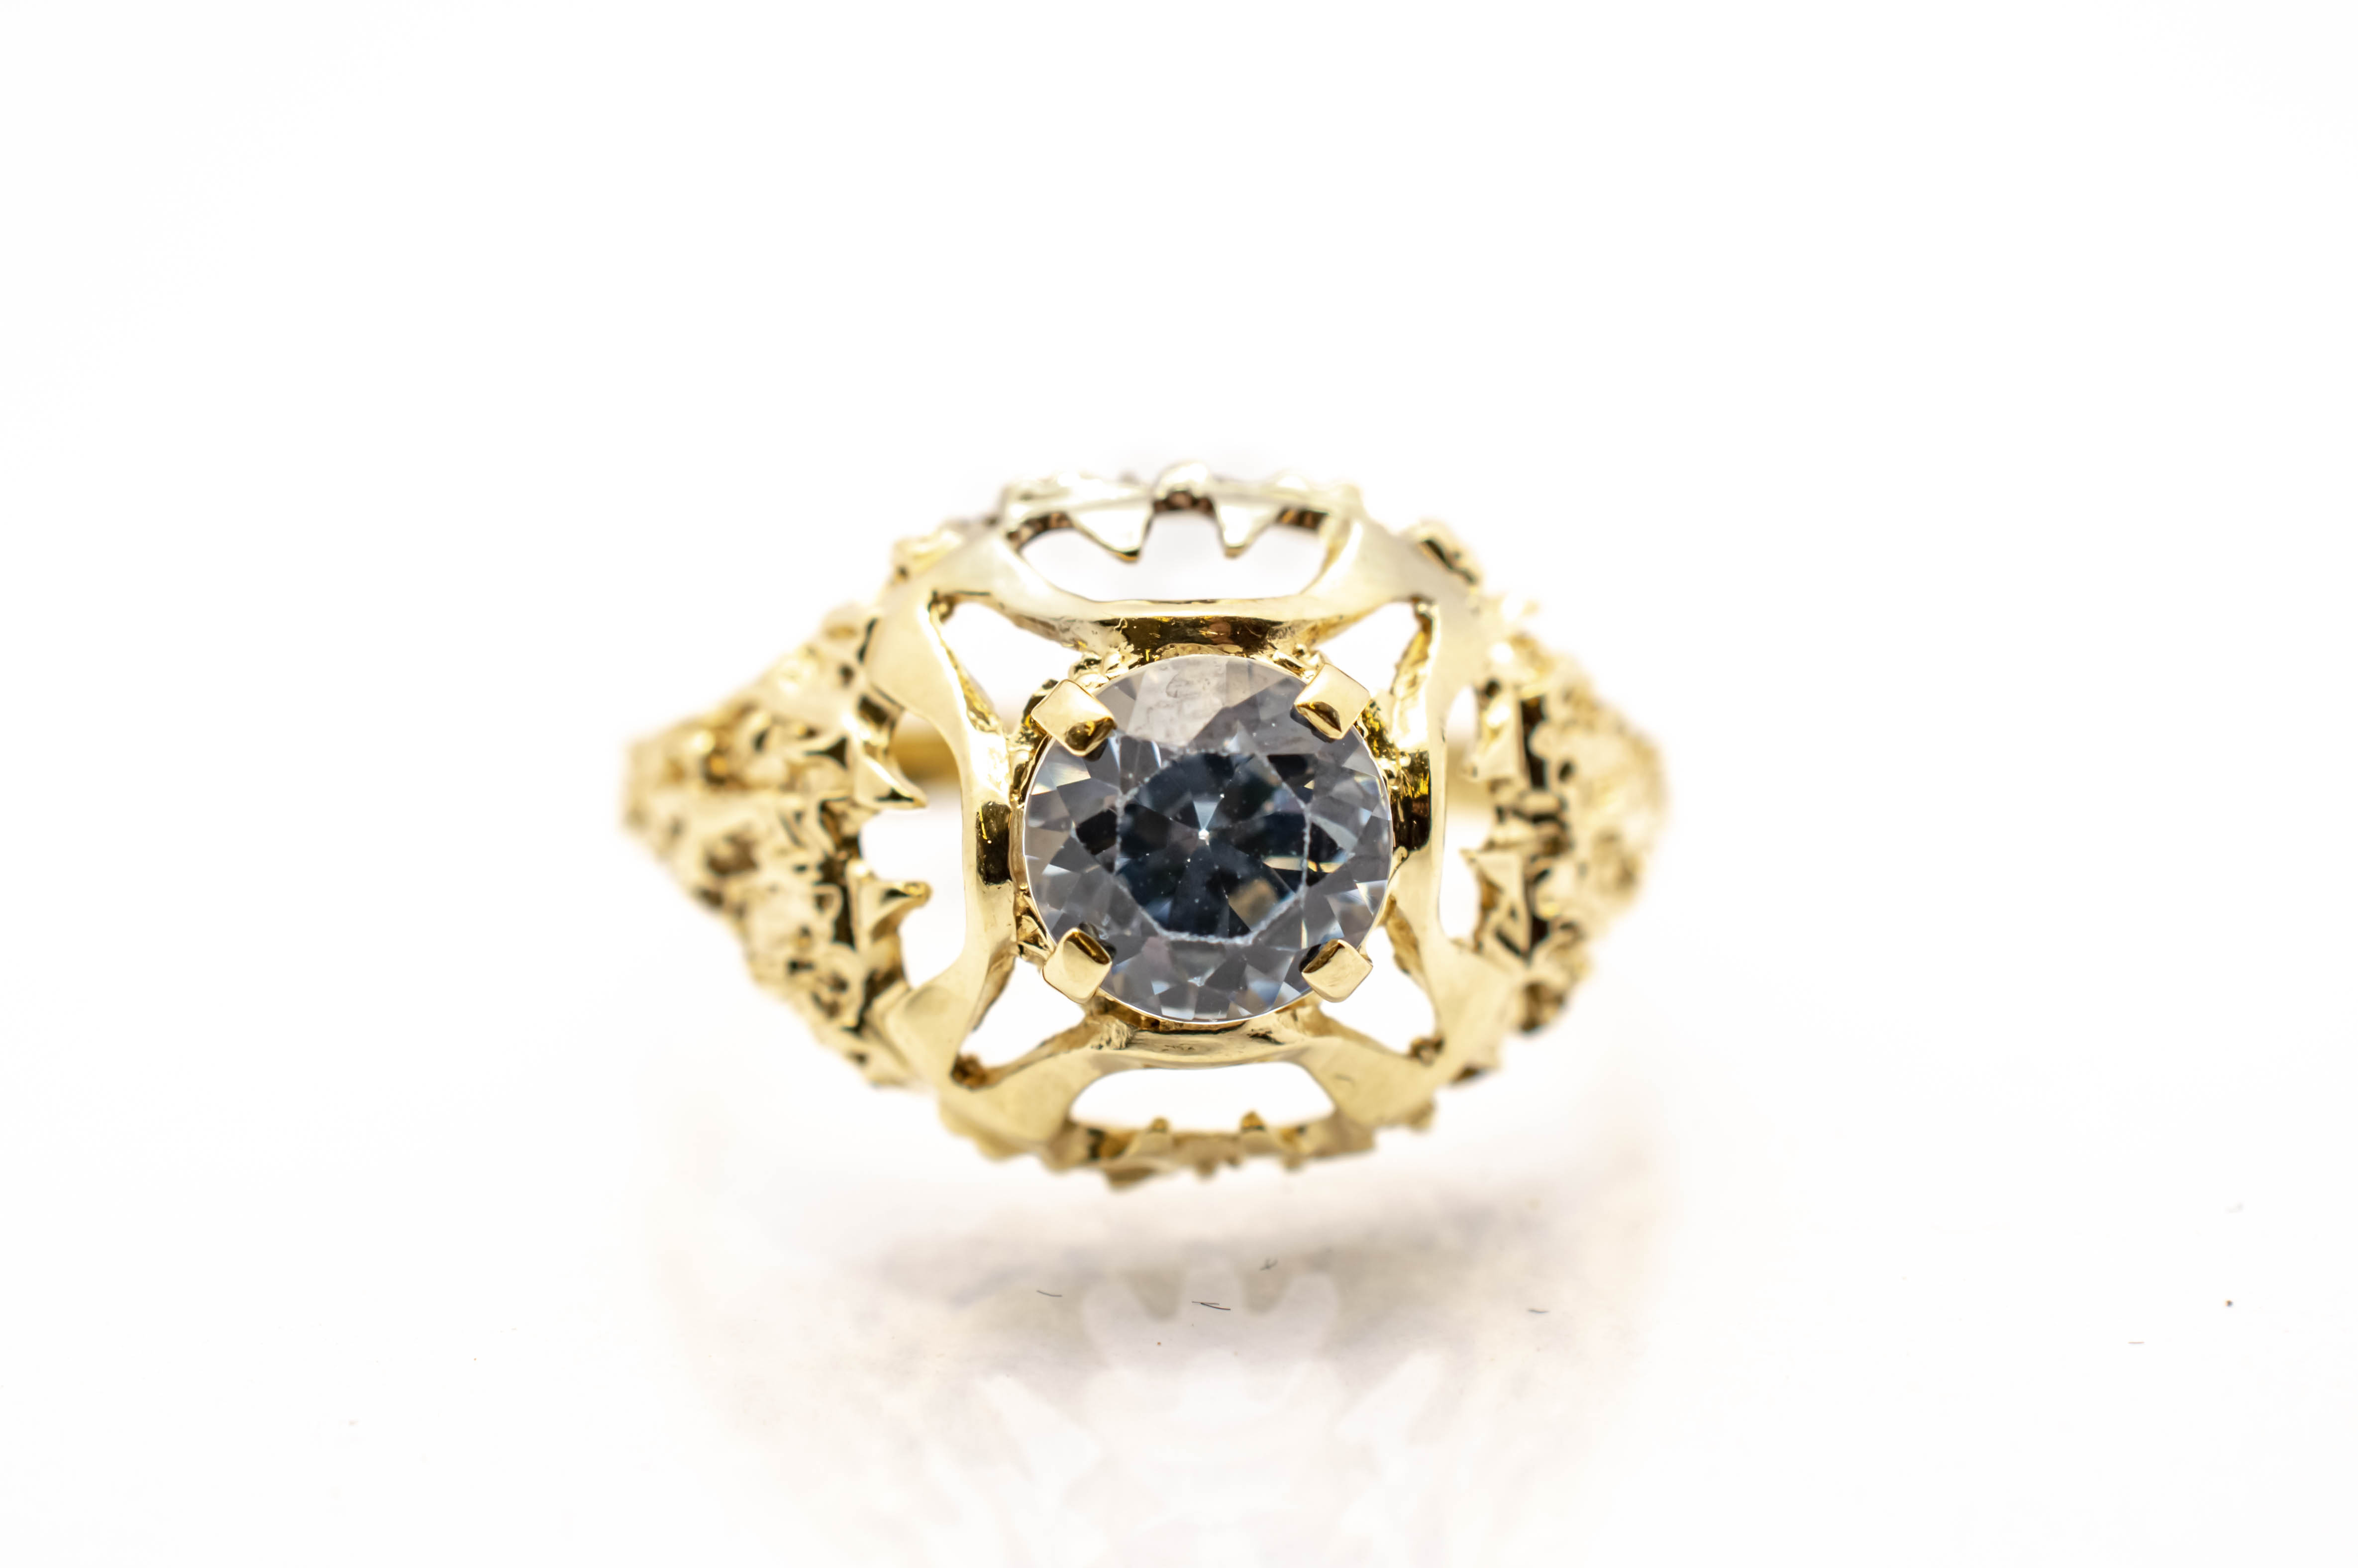 Zlatý prsten s modrým kamenem - topaz, vel. 55